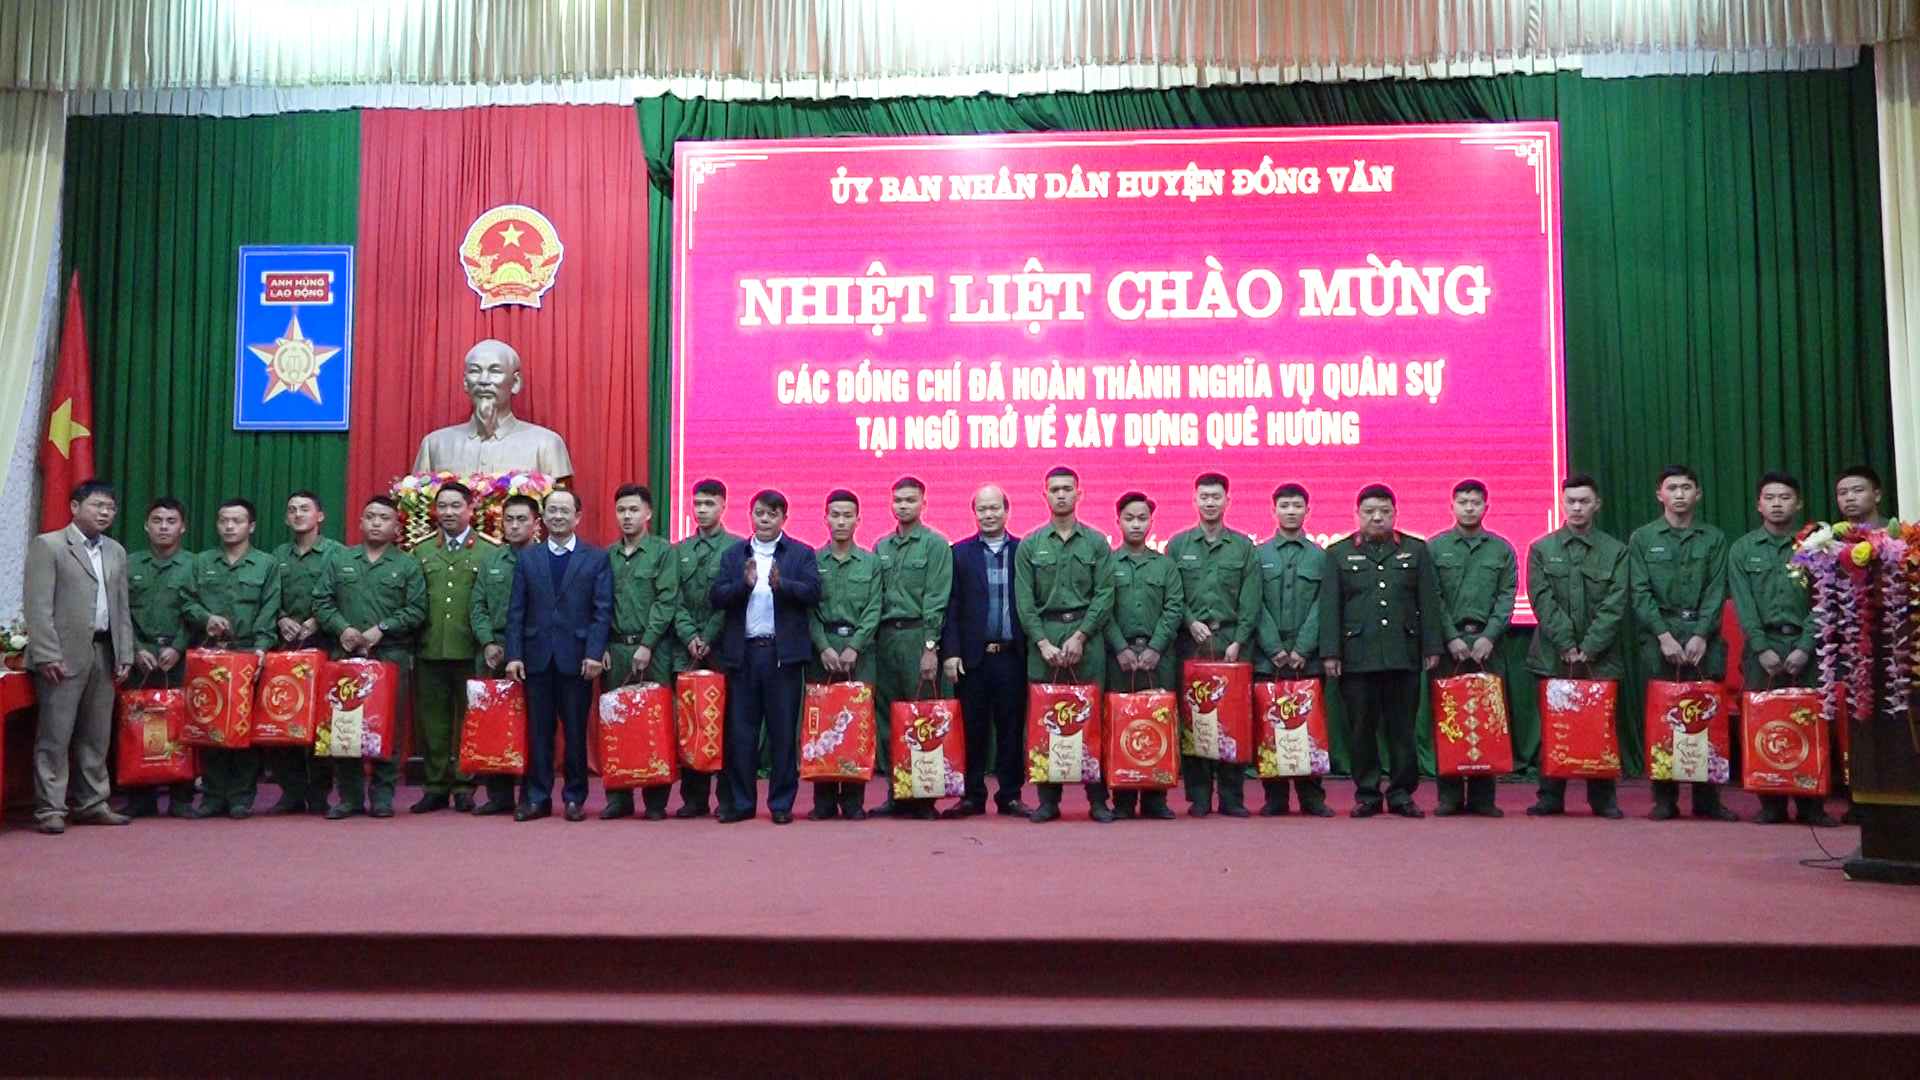 Đồng Văn tổ chức gặp mặt các quân nhân hoàn thành nghĩa vụ quân sự trở về địa phương